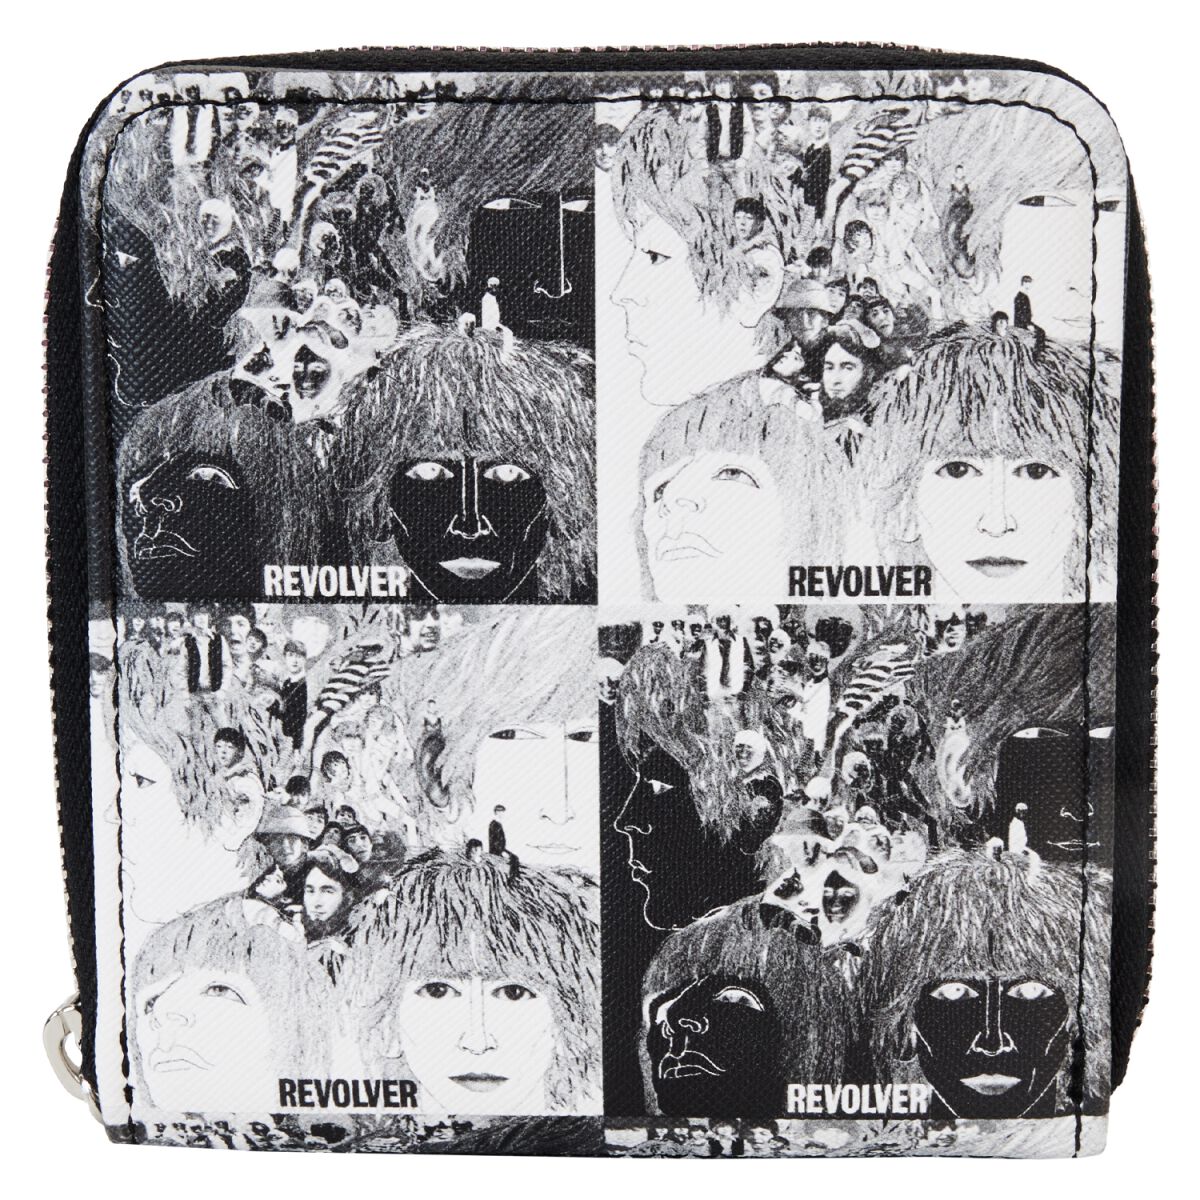 The Beatles Geldbörse - Loungefly - Revolver Album - für Damen - schwarz/weiß  - Lizenziertes Merchandise! von The Beatles